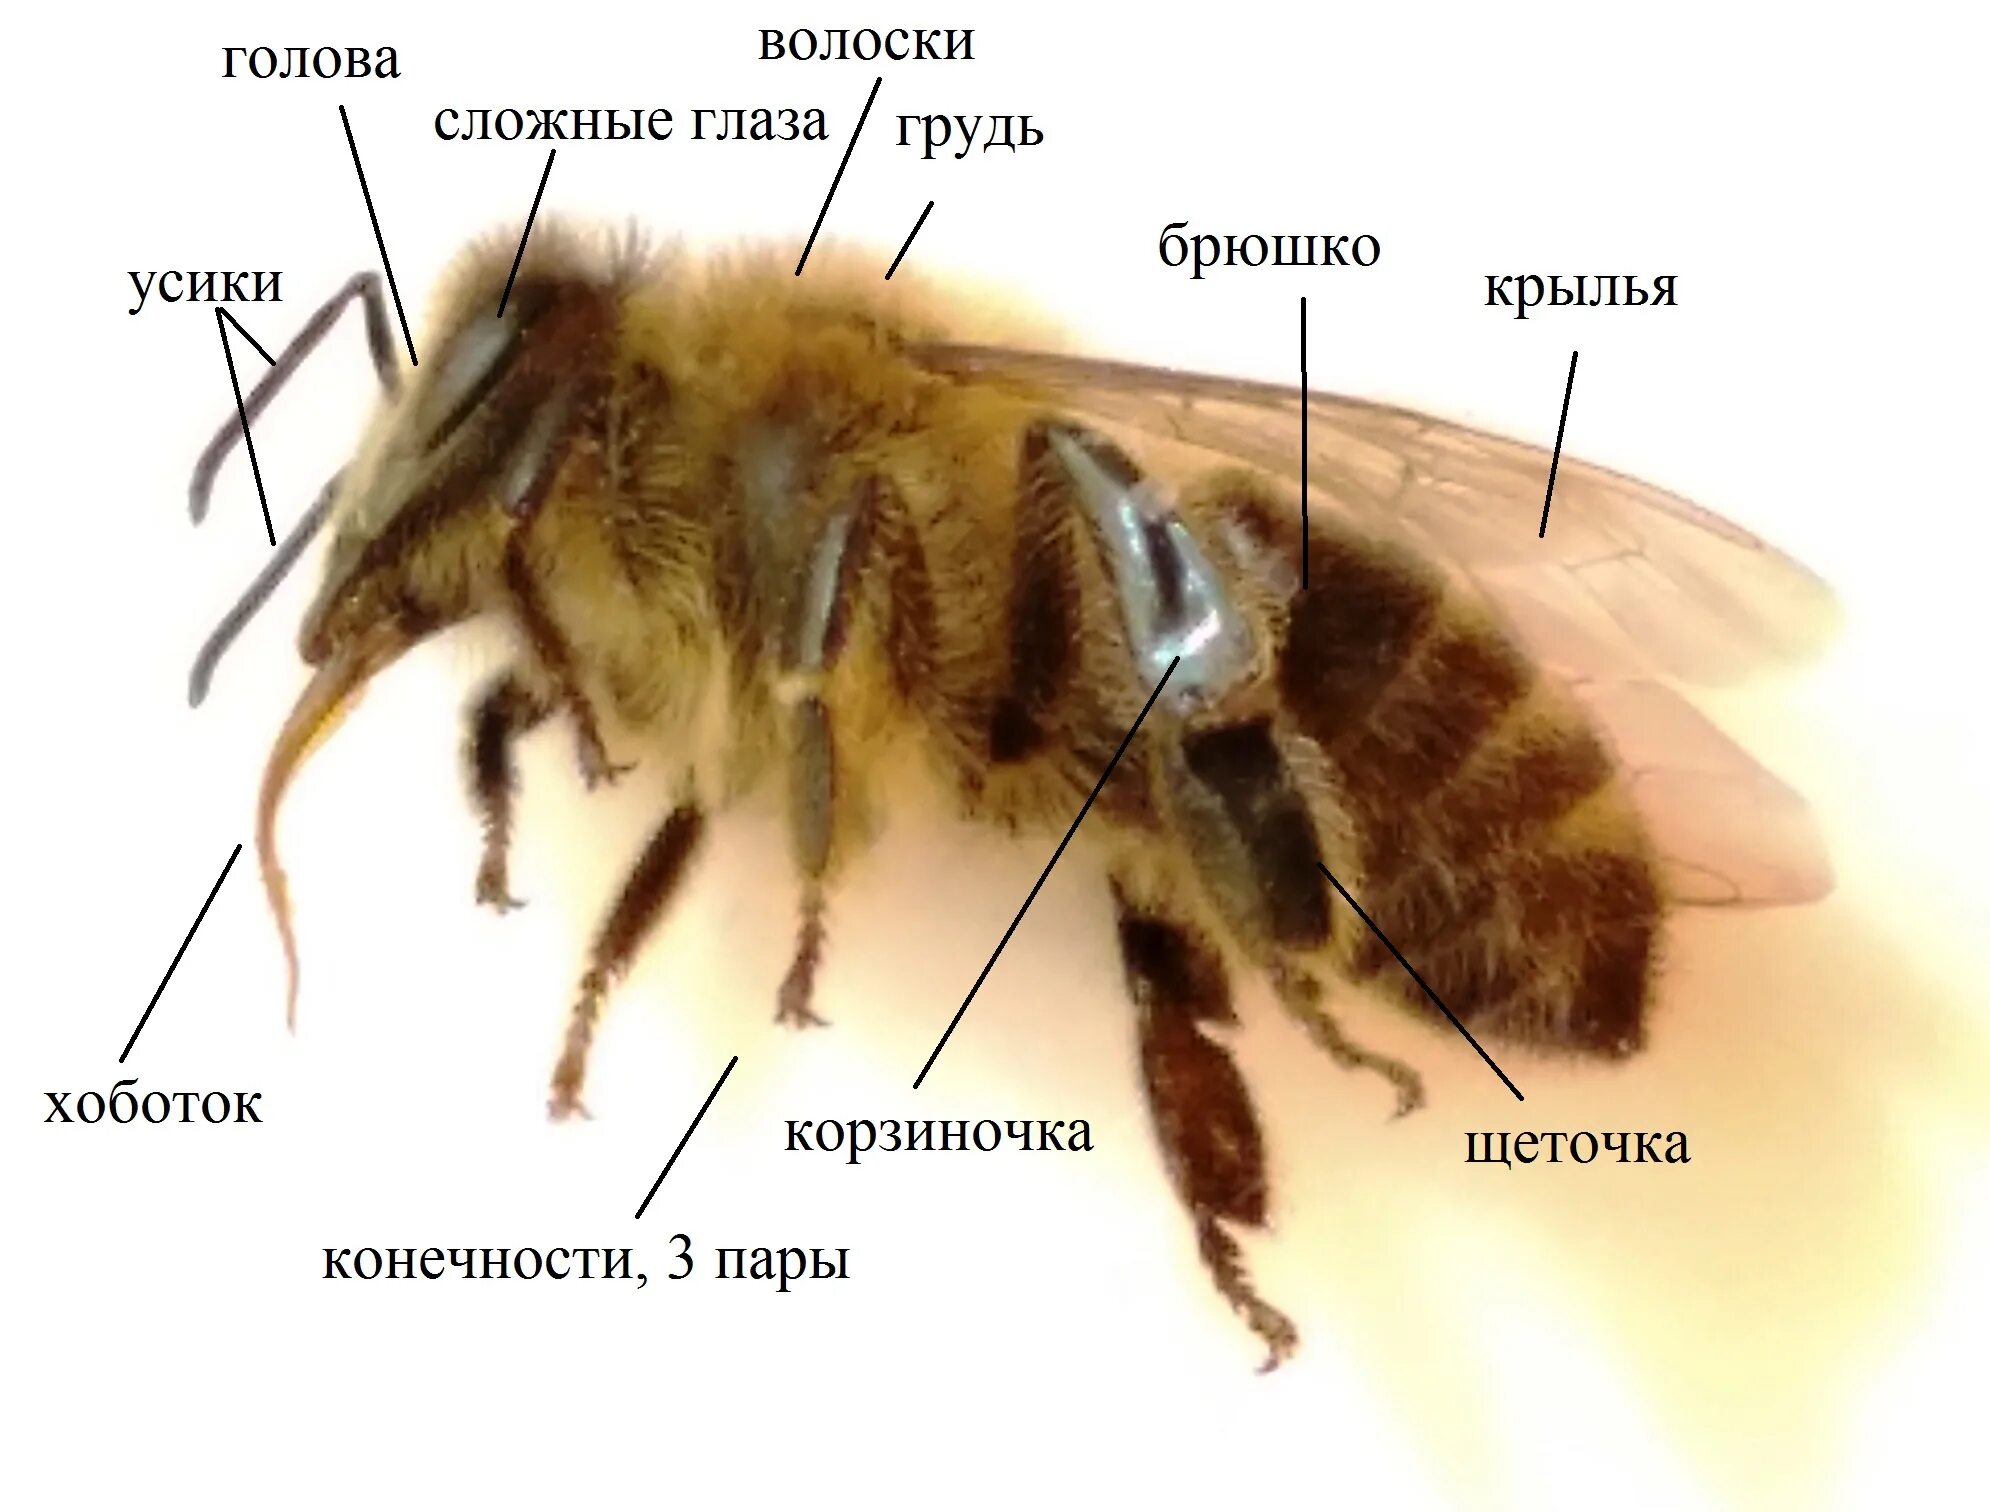 Анатомия пчелы медоносной. Строение пчелы медоносной. Внешнее строение пчелы. Строение тела пчелы медоносной. Окраска тела пчелы